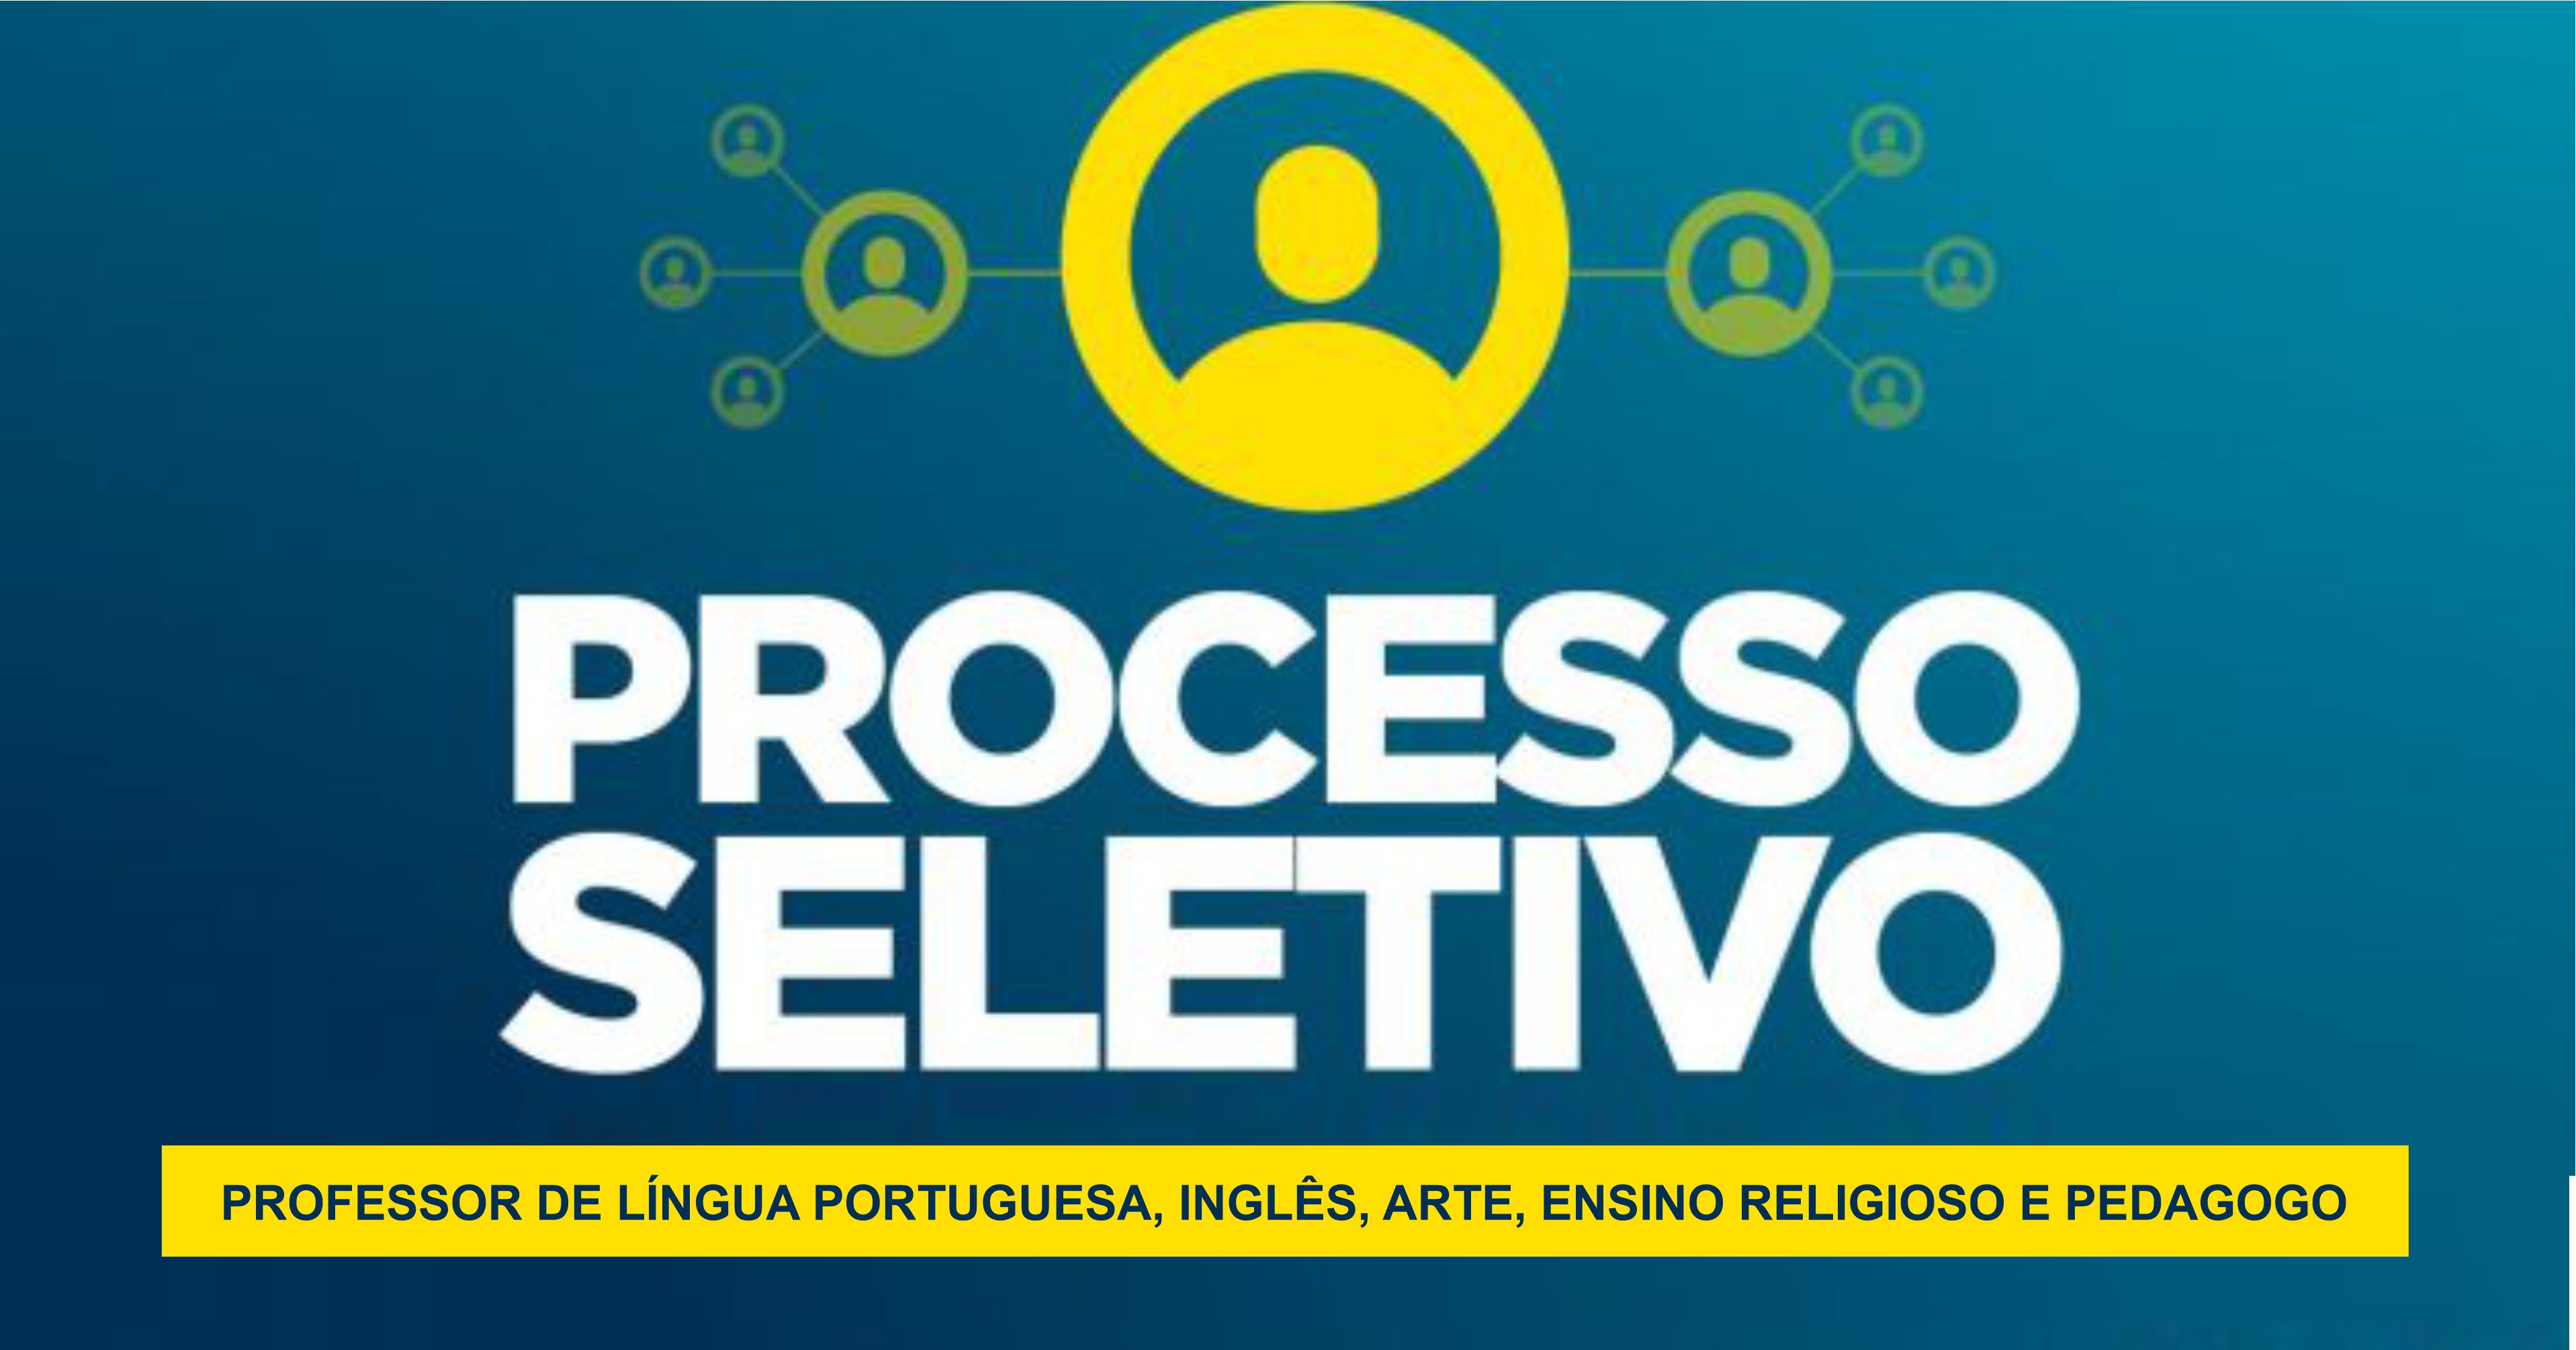 ATENÇÃO: PREFEITURA ABRE PROCESSO SELETIVO PARA DE PROFESSOR DE LÍNGUA PORTUGUESA, LÍNGUA ESTRANGEIRA (INGLÊS), ARTE, ENSINO RELIGIOSO E PEDAGOGO.